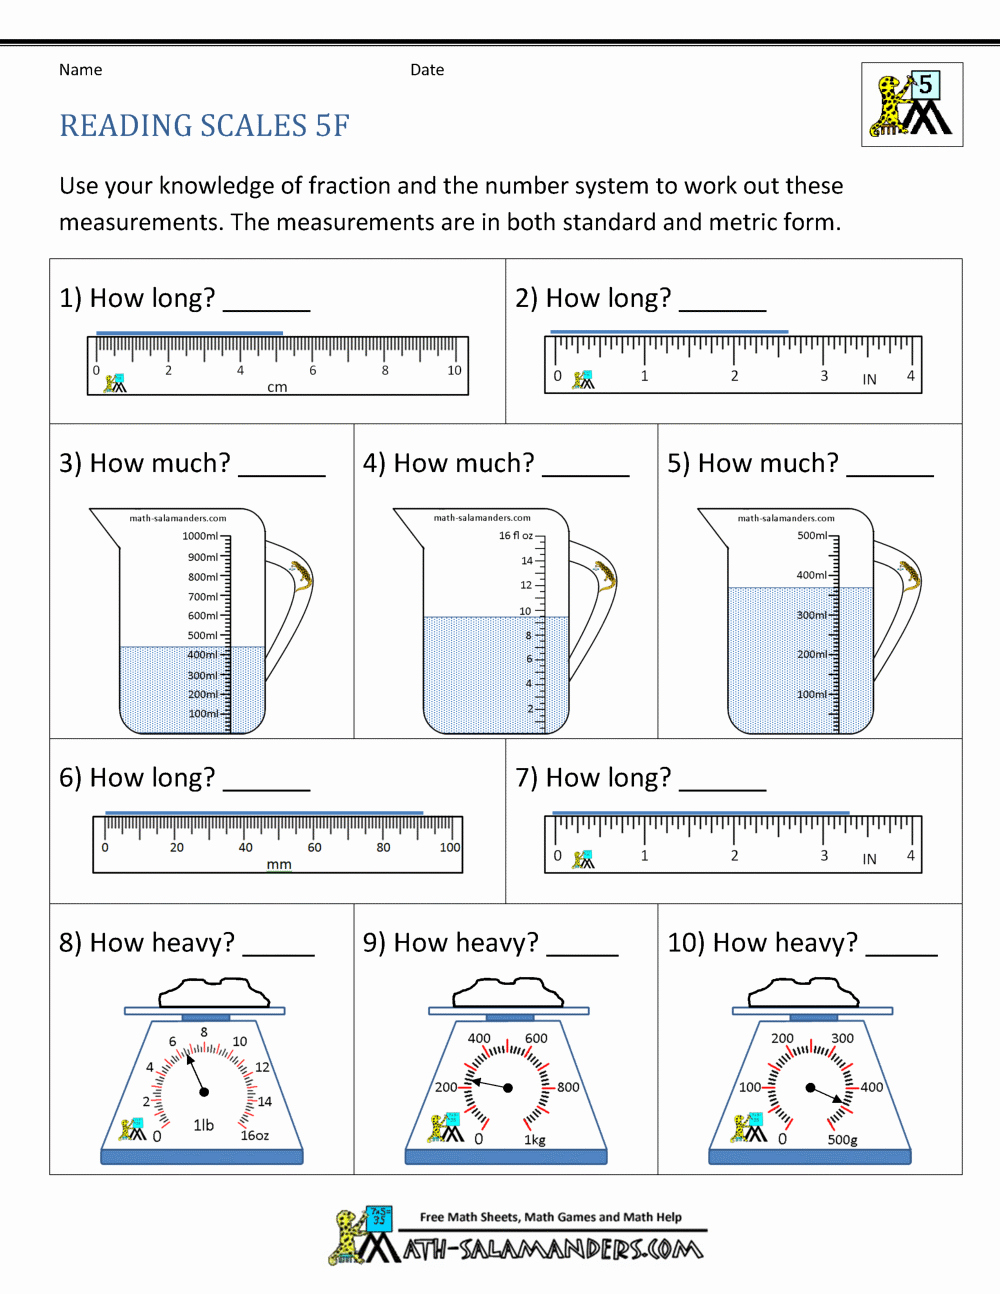 Measurement Estimation Worksheets Inspirational 5th Grade Measurement Worksheets